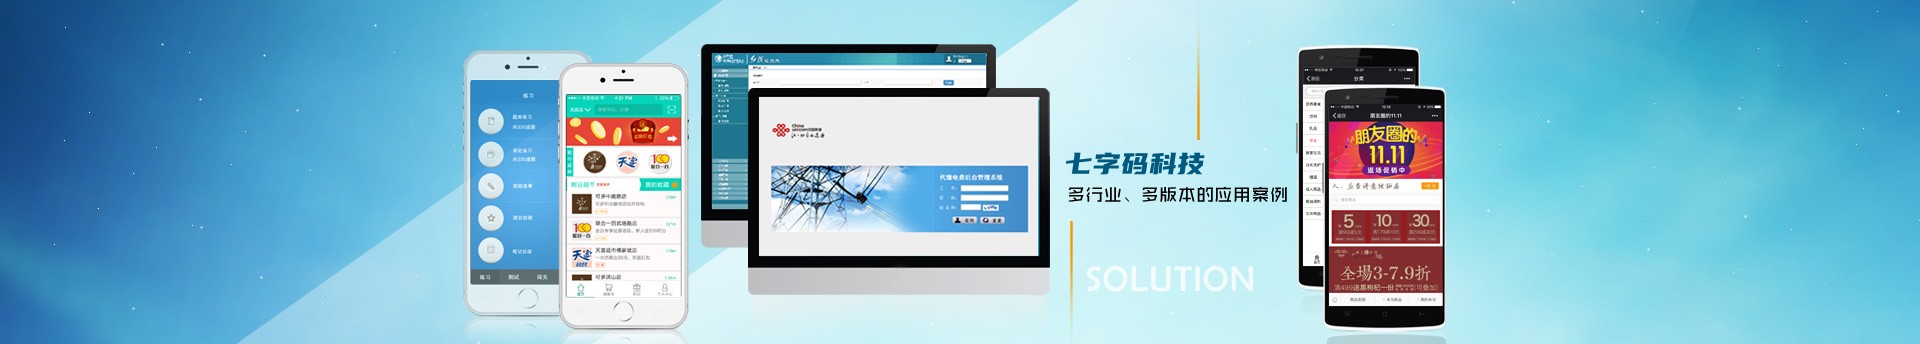 武汉软件开发-武汉网站建设-武汉app开发-武汉小程序开发-武汉数据可视化开发—解决方案